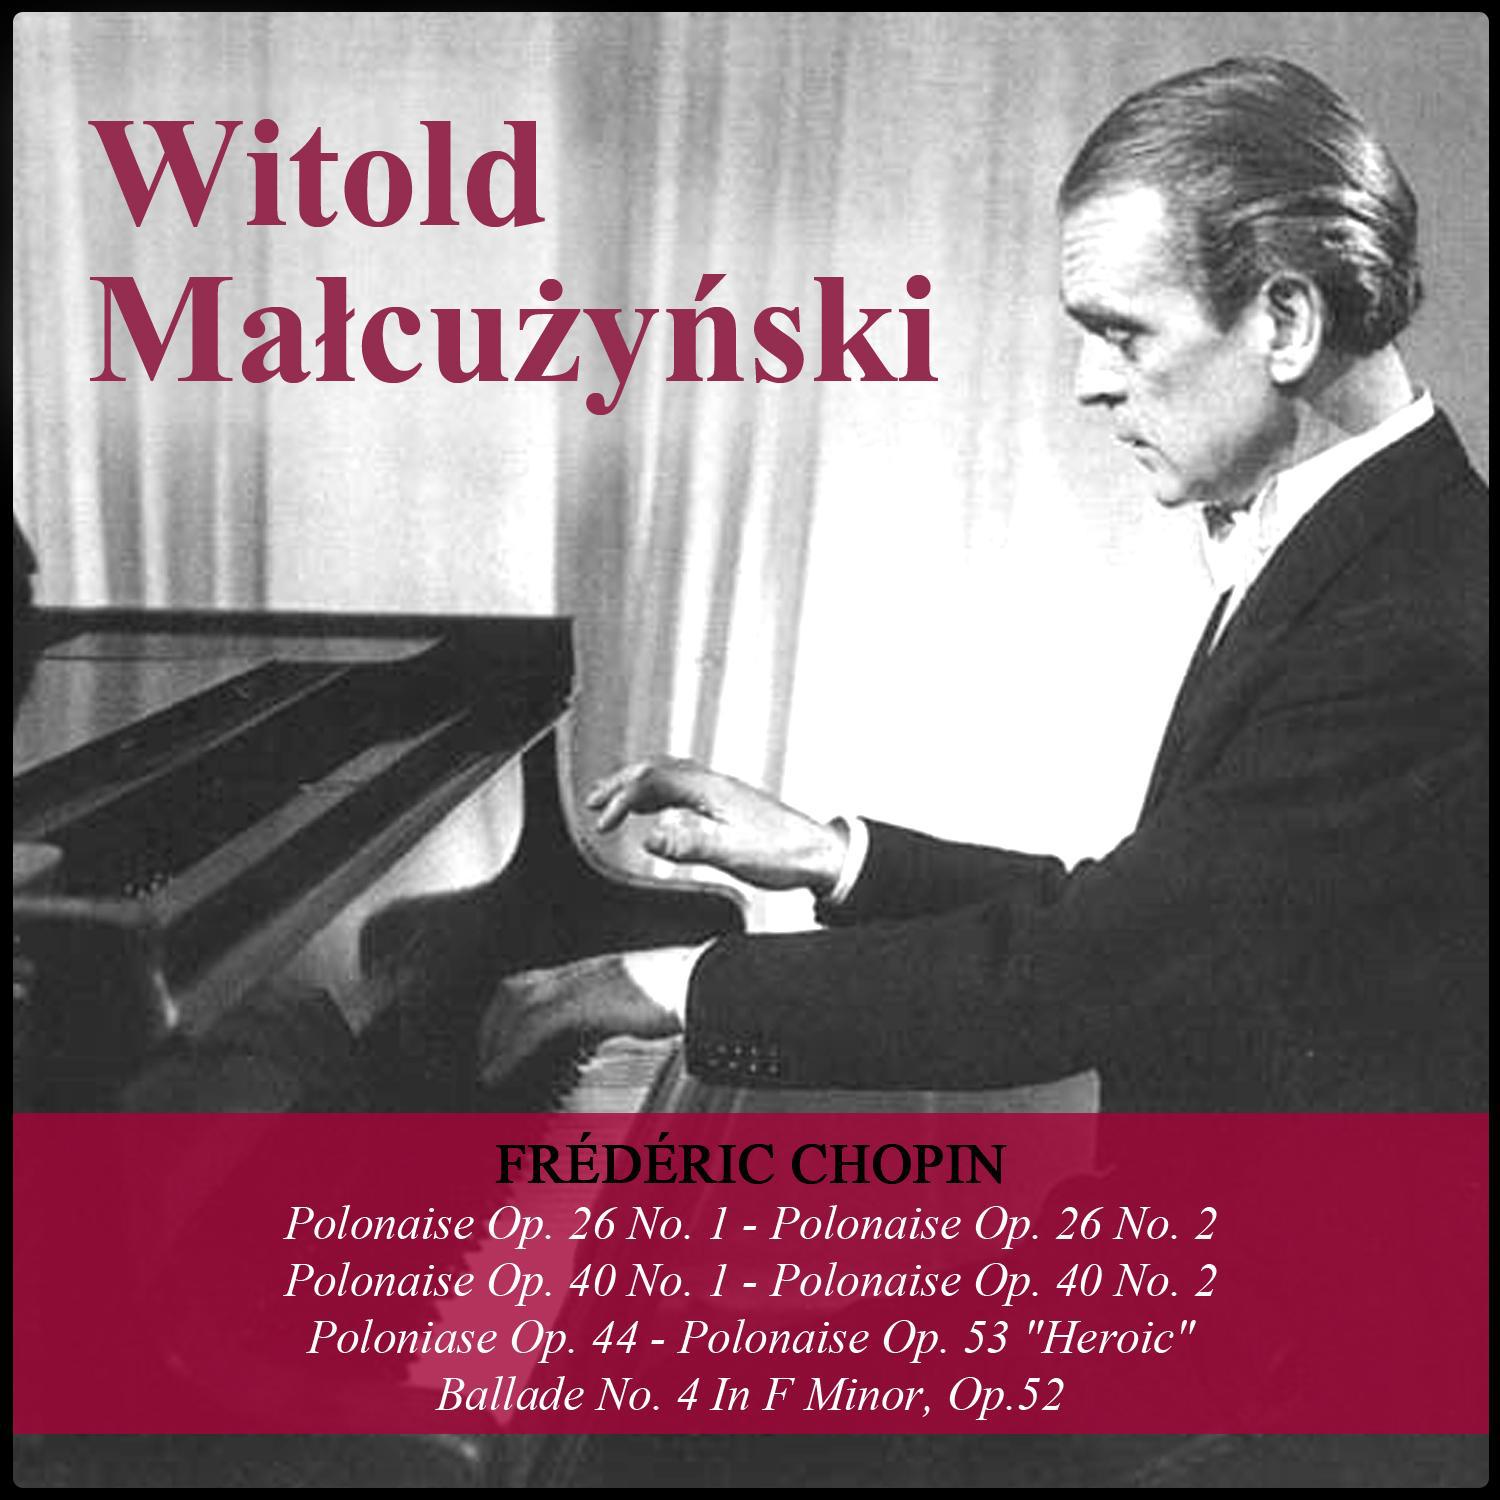 Chopin: Polonaise Op. 26 No. 1 - Polonaise Op. 26 No. 2 - Polonaise Op. 40 No. 1 - Polonaise Op. 40 No. 2 - Polonaise Op. 44 - Polonaise Op. 53 "Heroic" - Ballade No. 4 In F Minor, Op.52